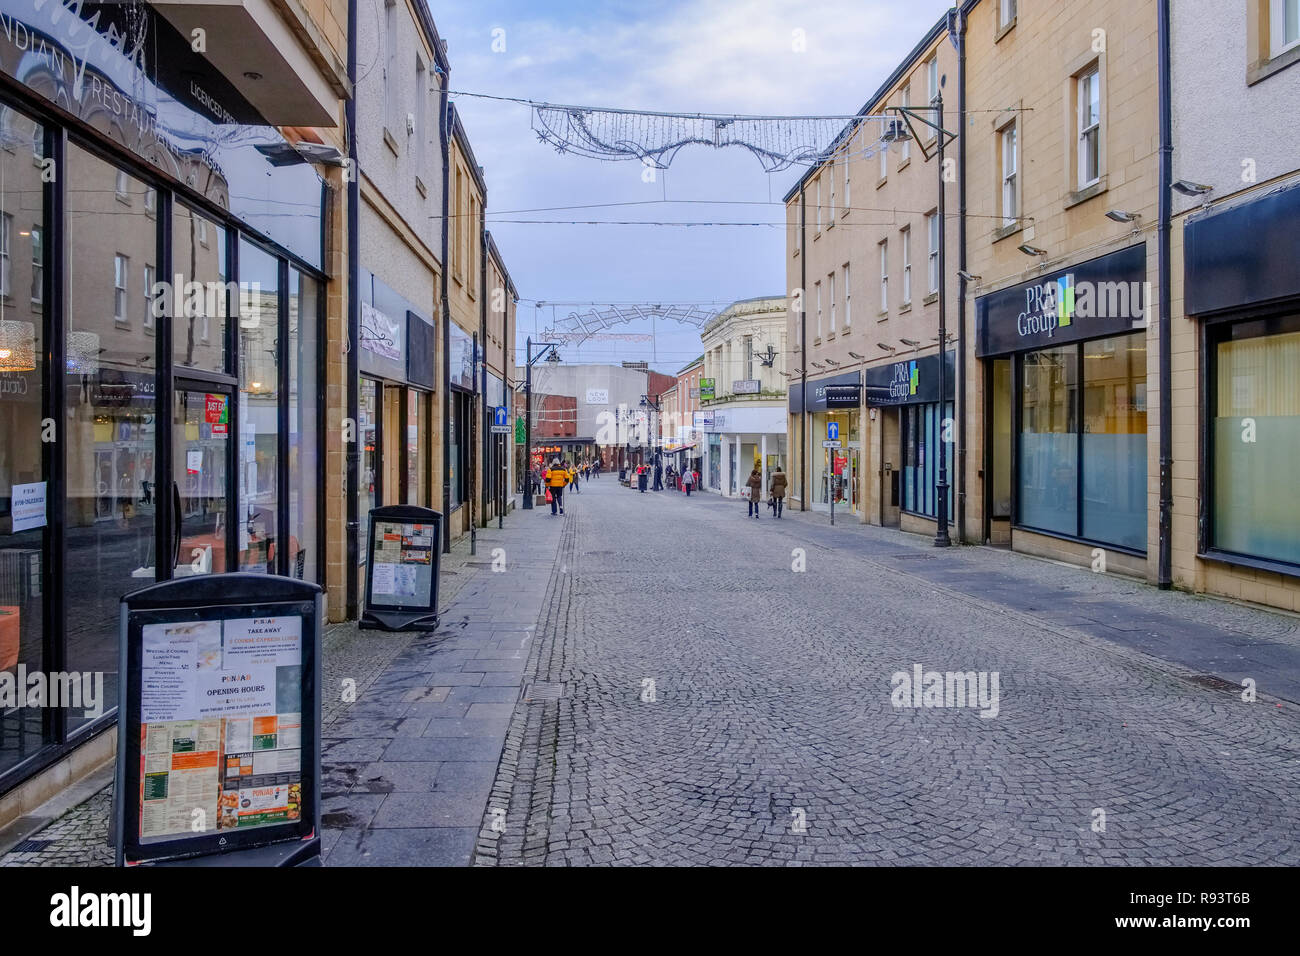 En Kilmarnock, Escocia, Reino Unido - 10 de diciembre de 2018: Quemaduras Precinct zona peatonal en el centro de la ciudad escocesa de Kilmarnock con tiendas a un área vacía Foto de stock